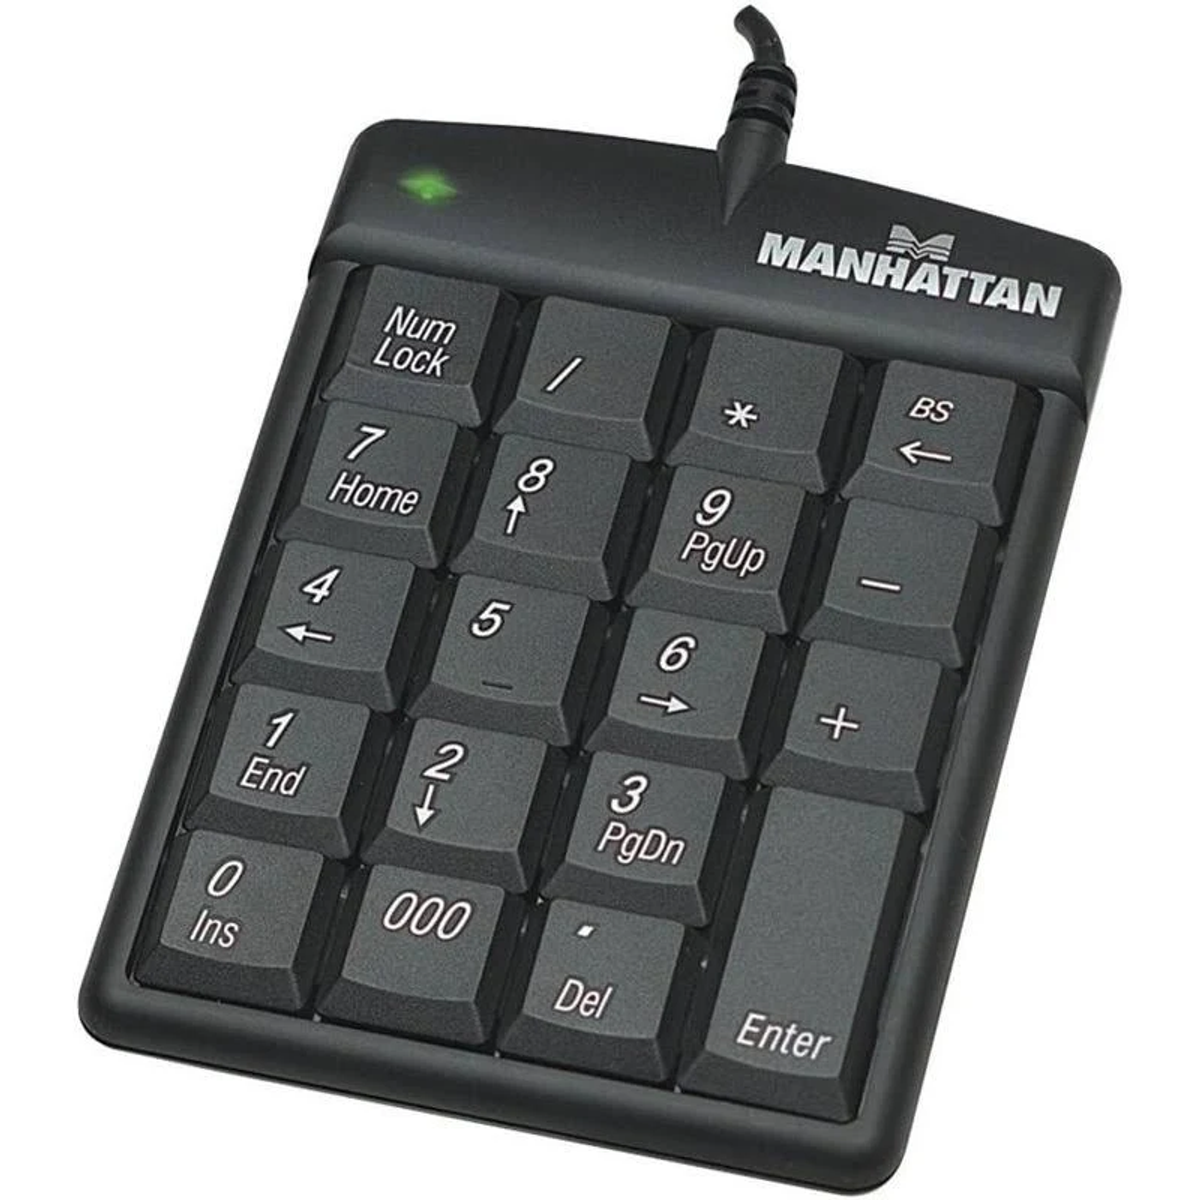 MANHATTAN MANHATTAN Ausgabe / USB-Nummernblock Tastatur Eingabe Tastaturen